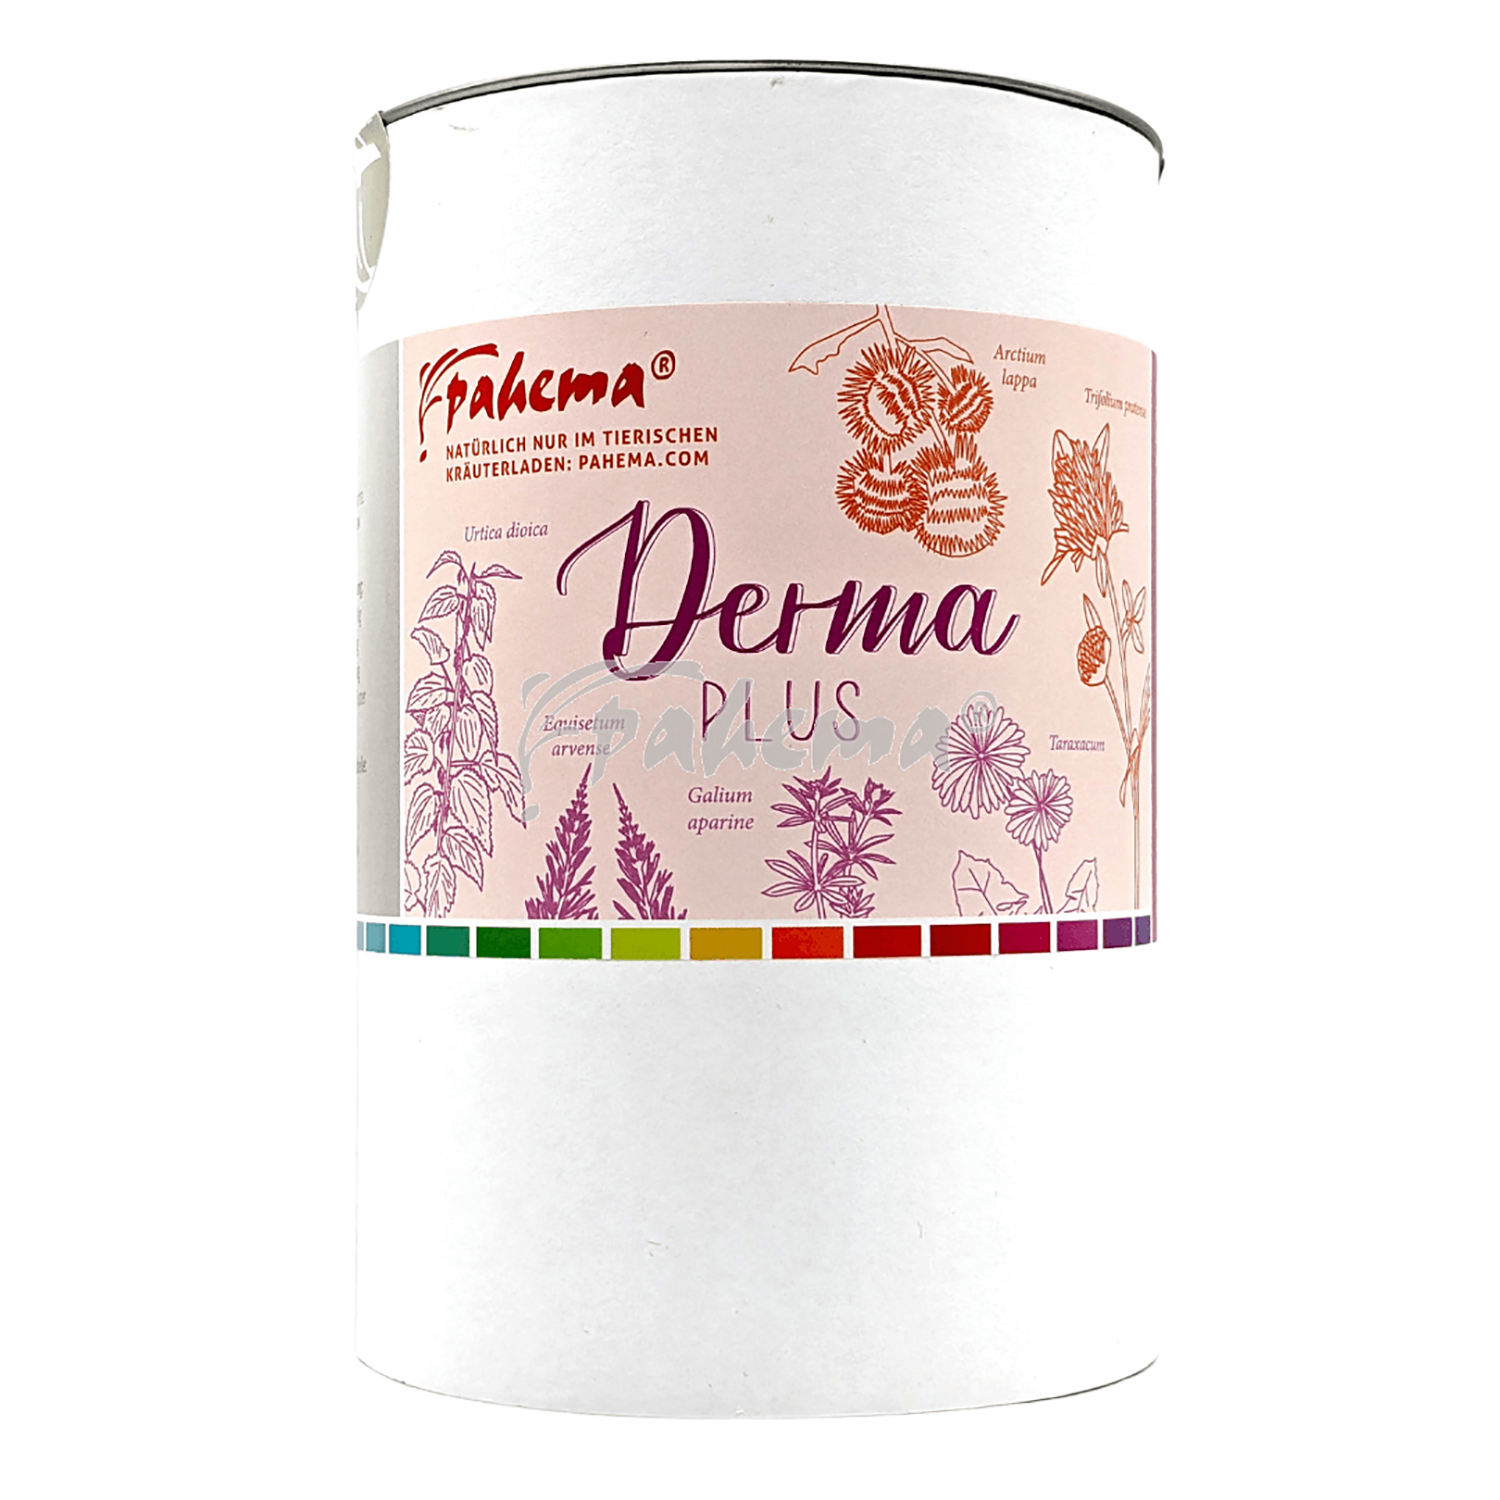 Derma Plus – Haut-Kräutermischung von Pahema – 250g